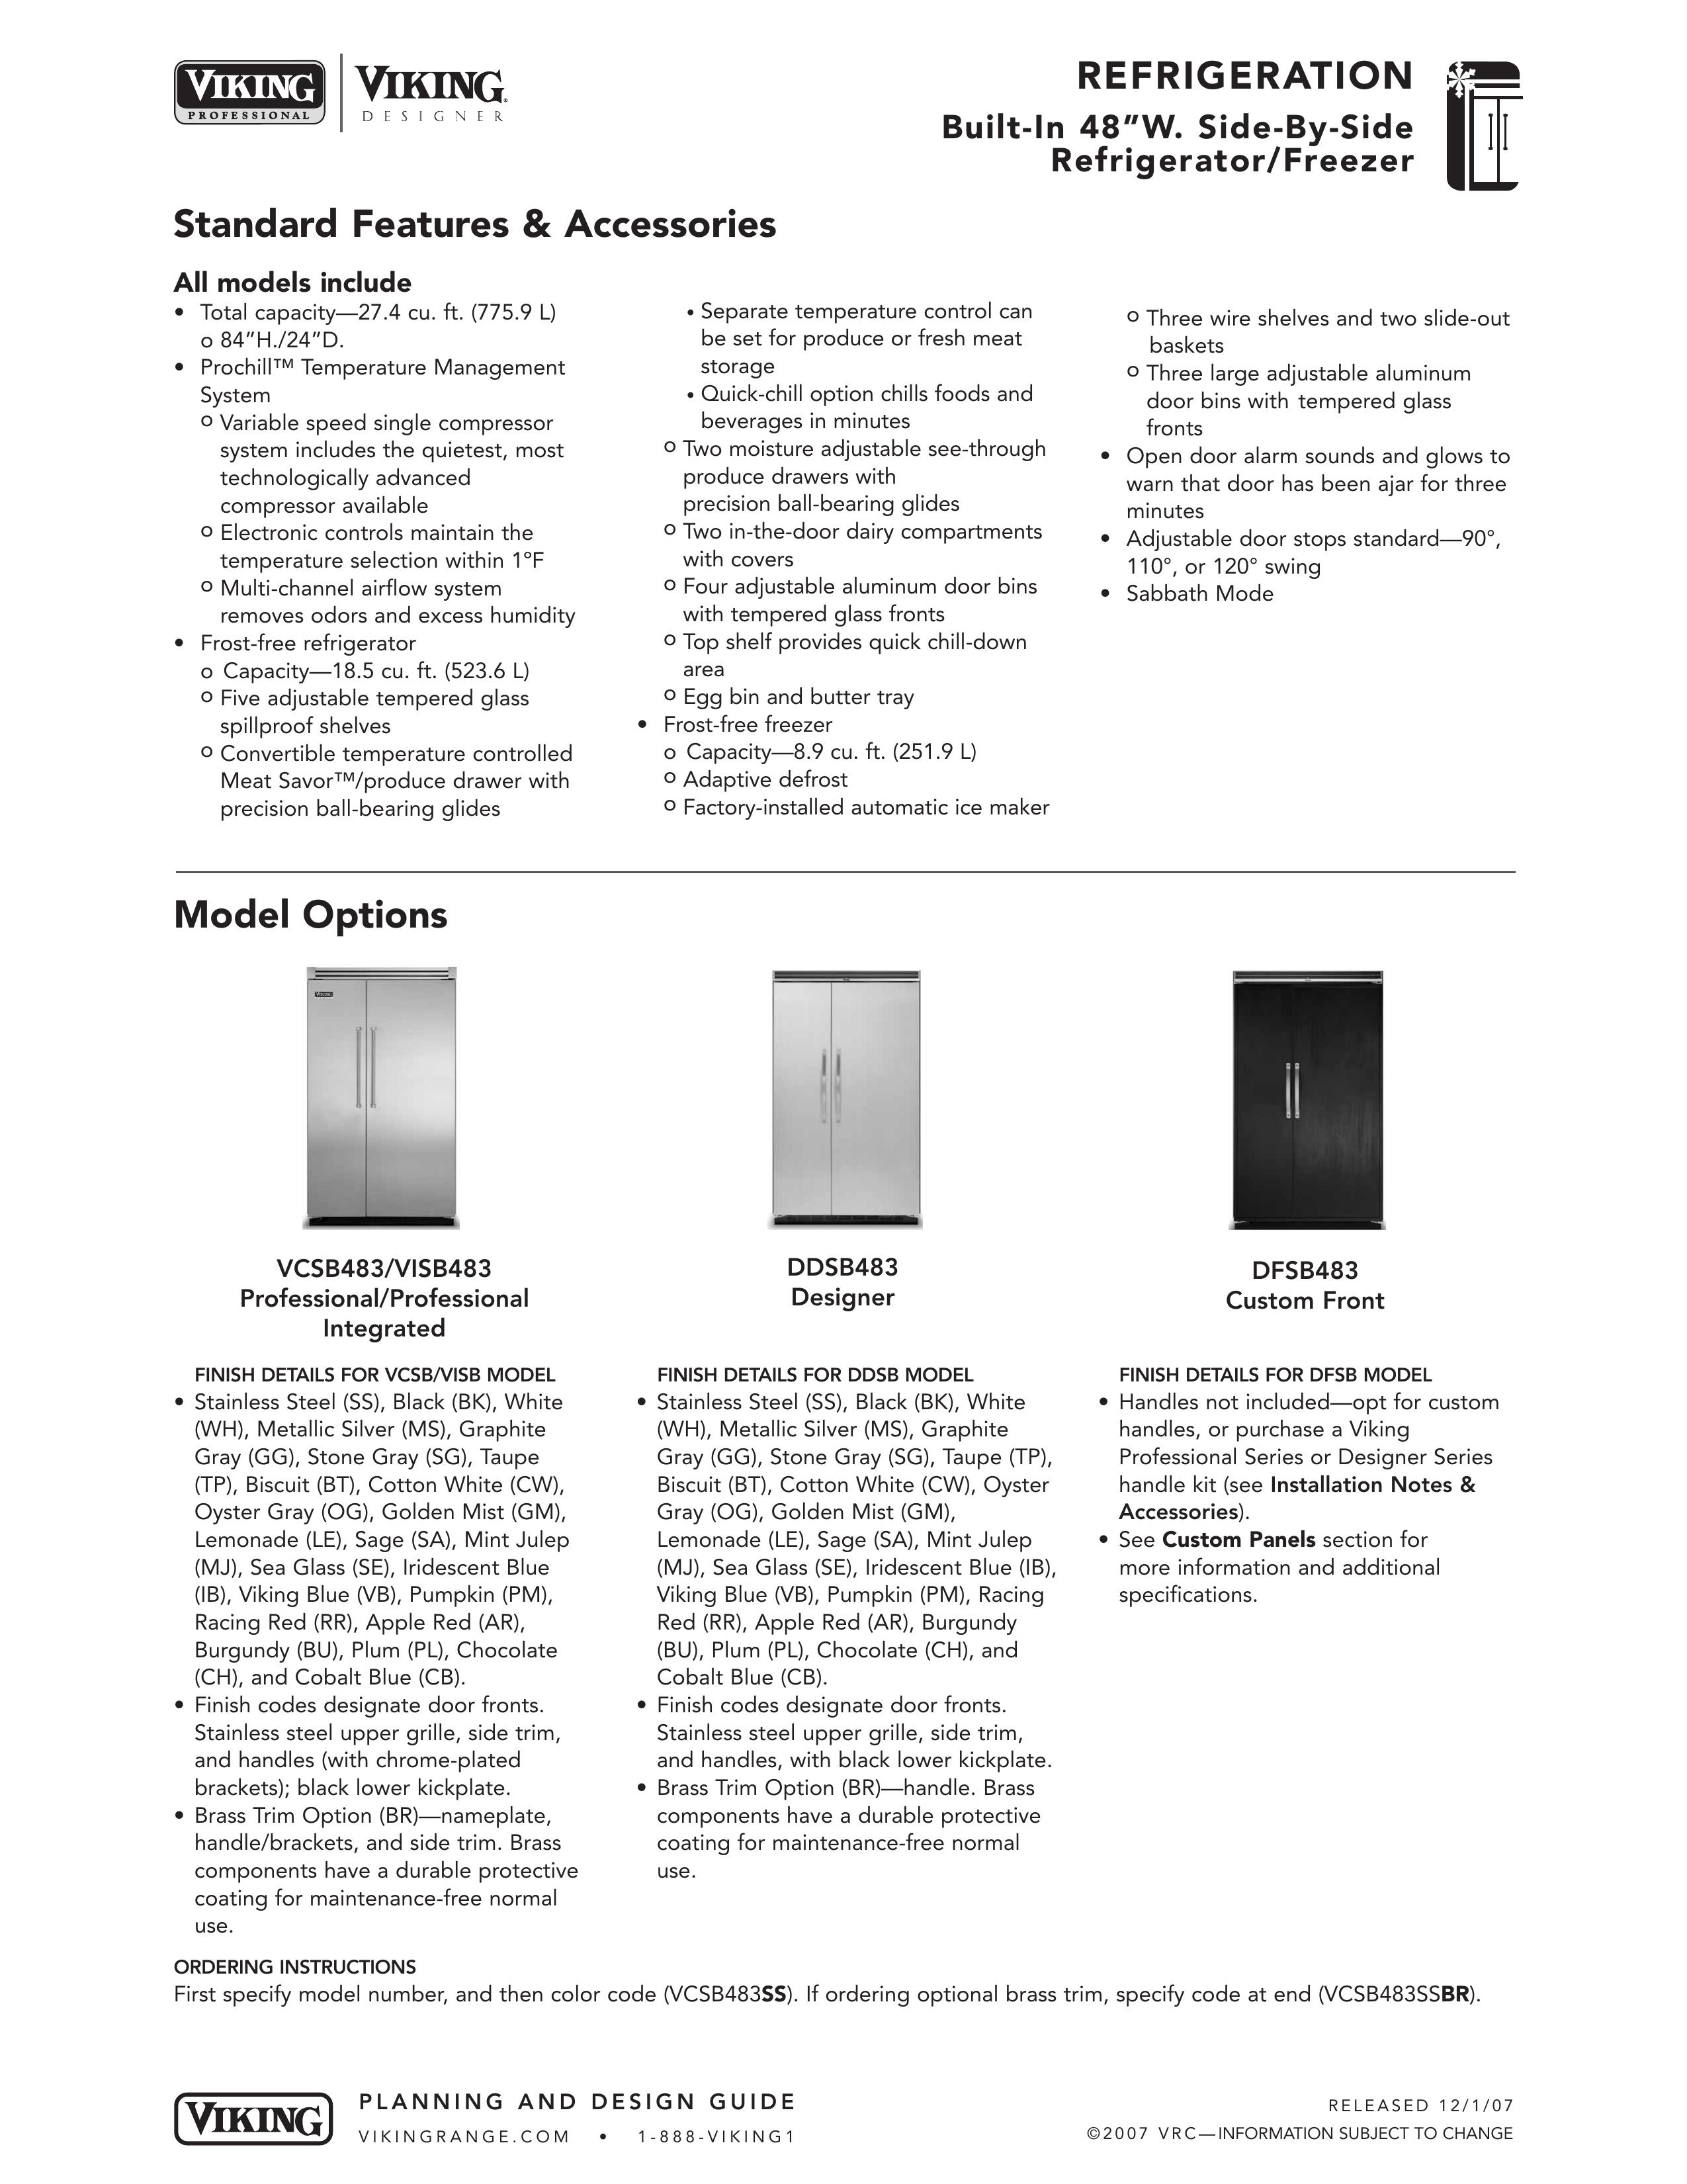 Viking DFSB483 Refrigerator User Manual